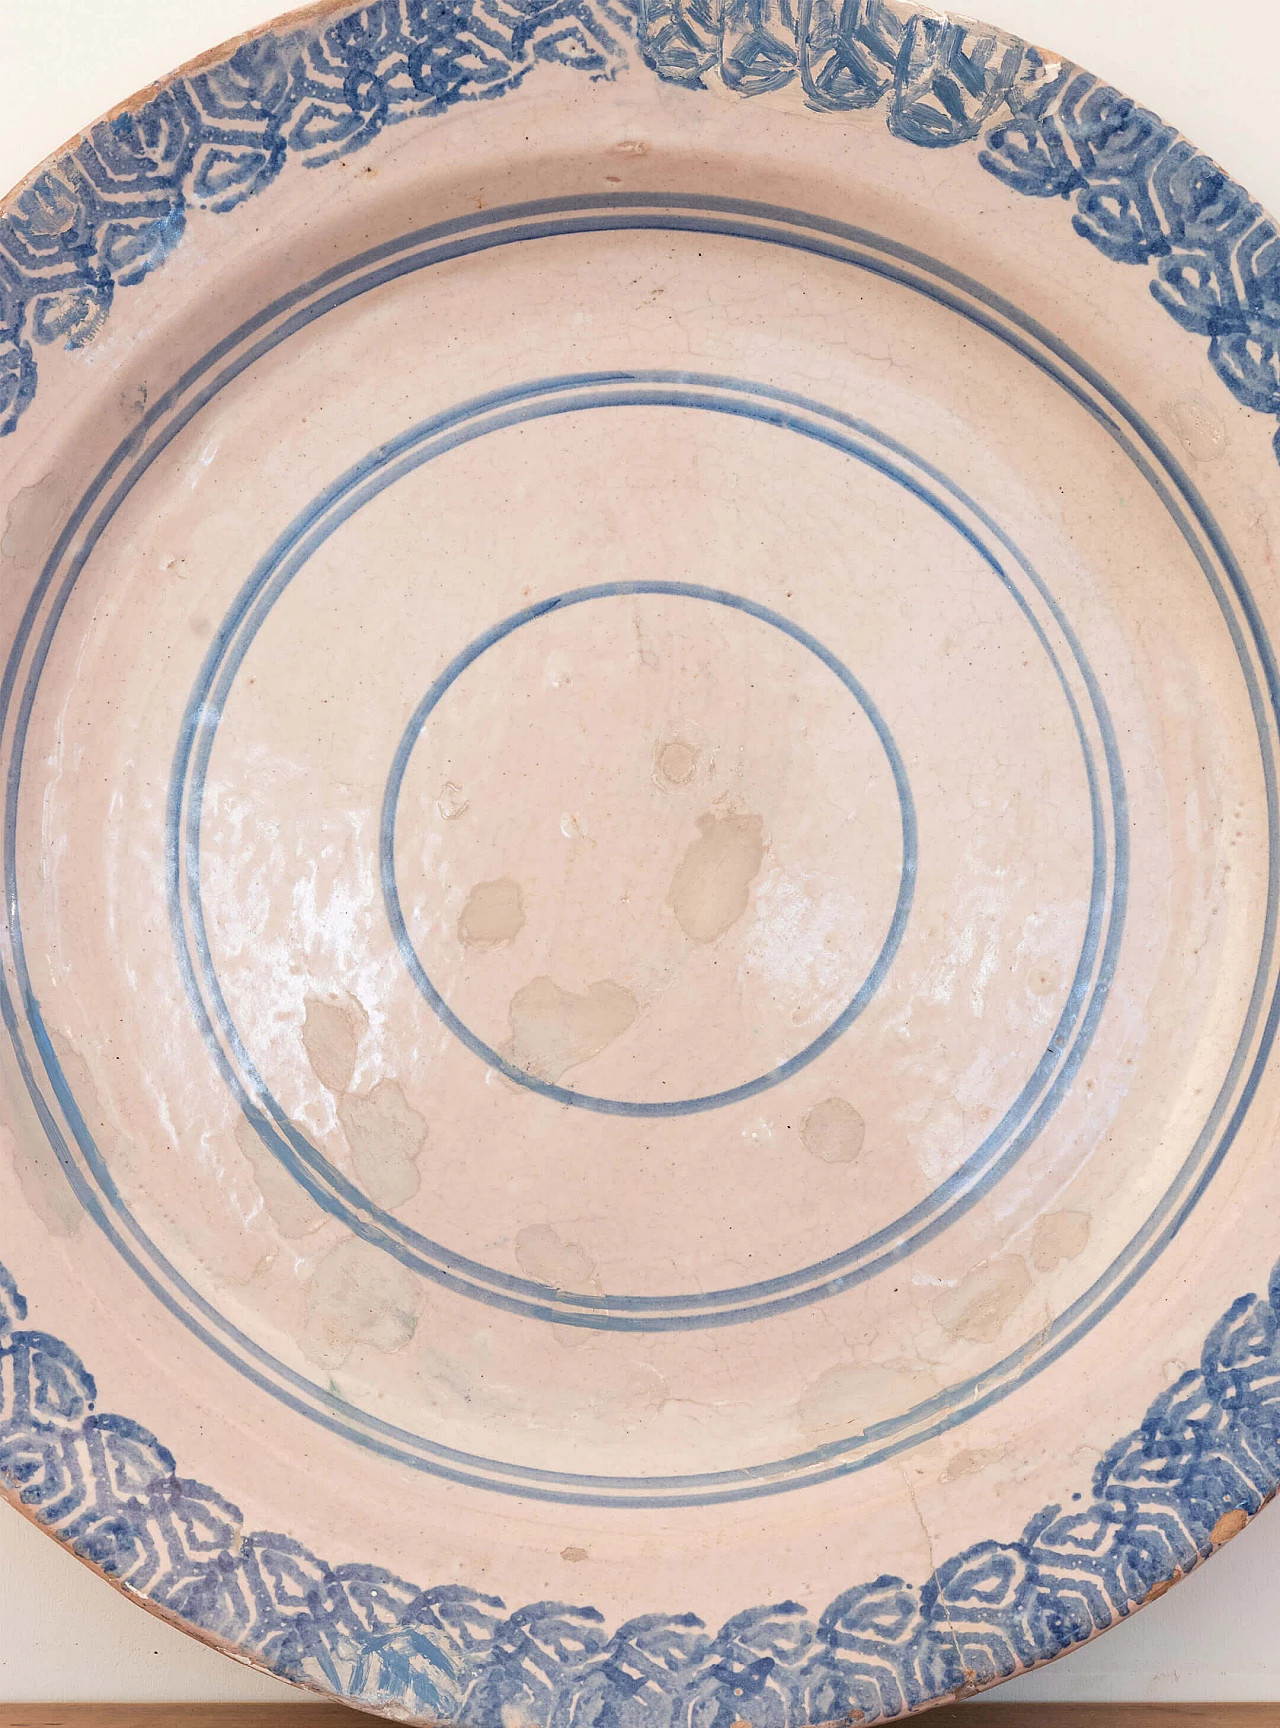 Laterza ceramic plate, 18th century 1084713